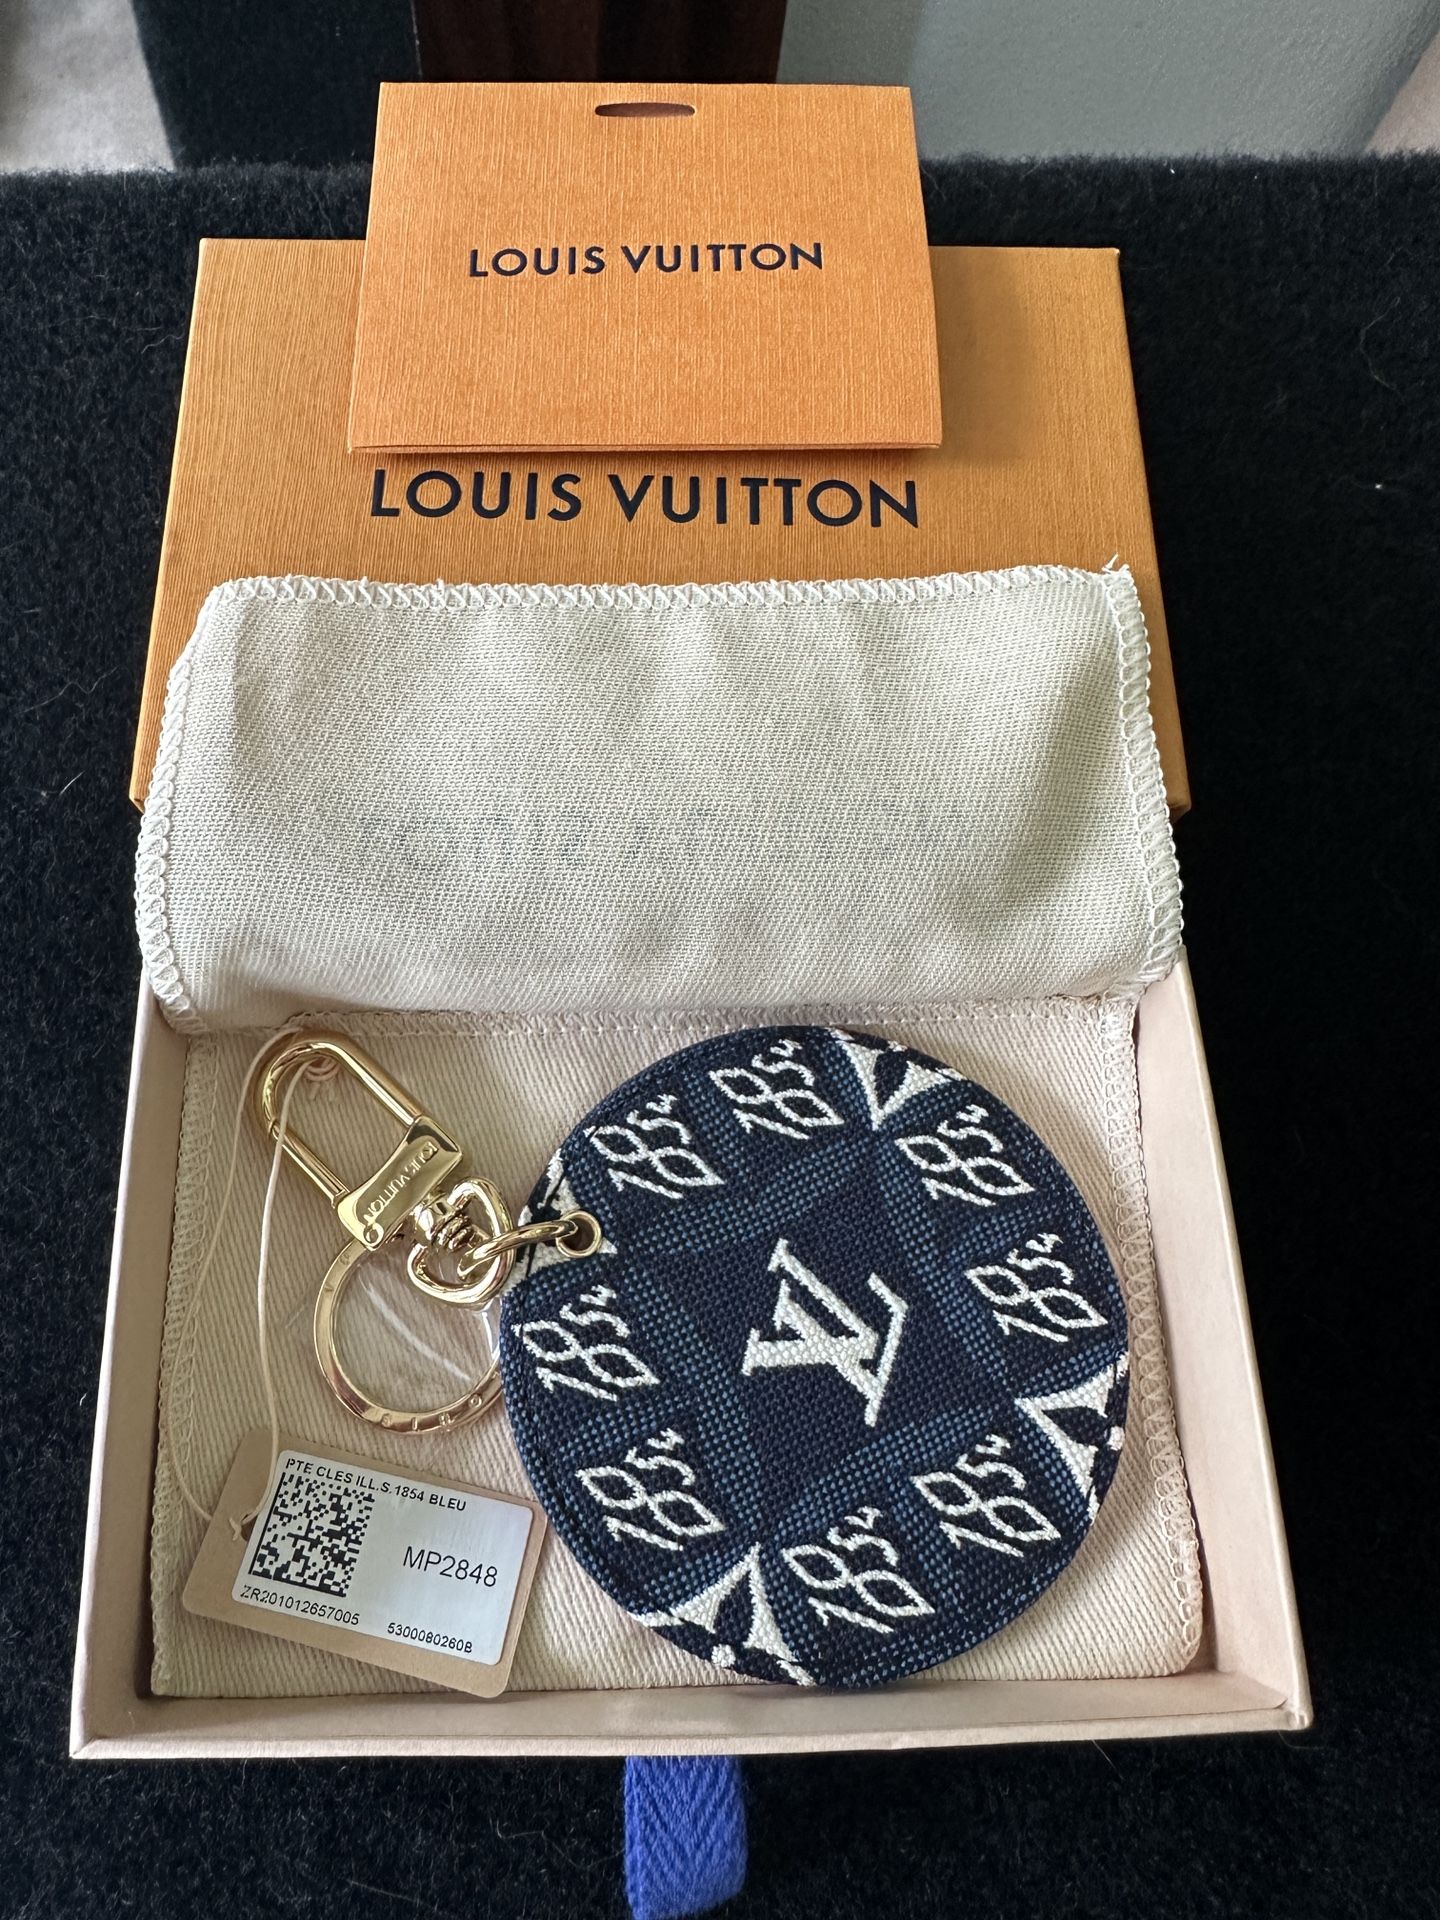 Louis Vuitton Keyring Bag Chain Keychain Portocle Ilustre MP2848